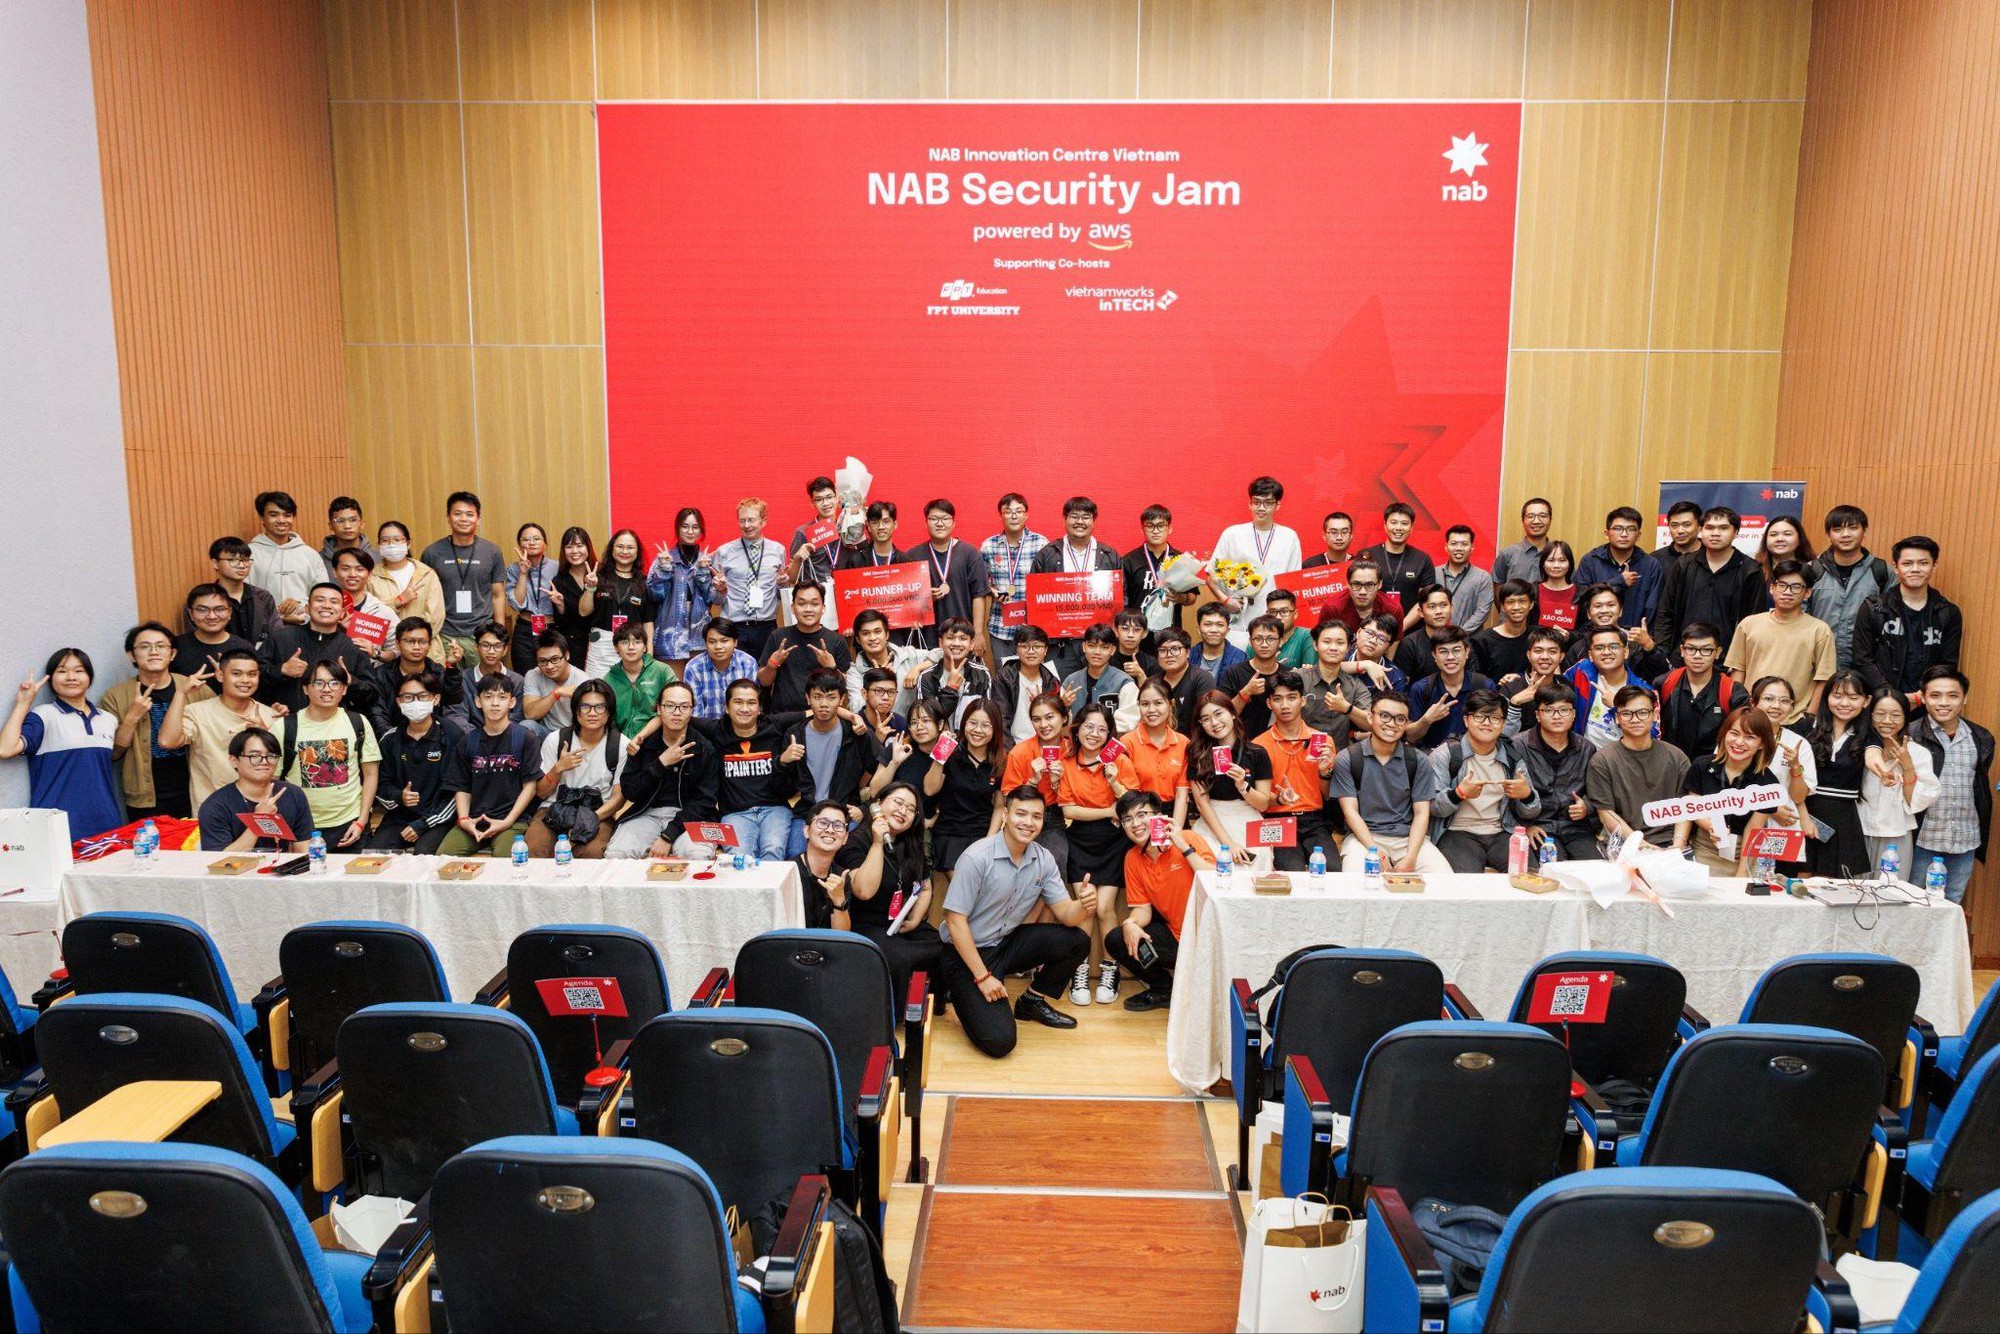 Security Jam: Sân chơi dành cho giới trẻ &quot;yêu công nghệ&quot; được tổ chức bởi NAB Innovation Centre Vietnam trên nền tảng AWS Cloud - Ảnh 1.